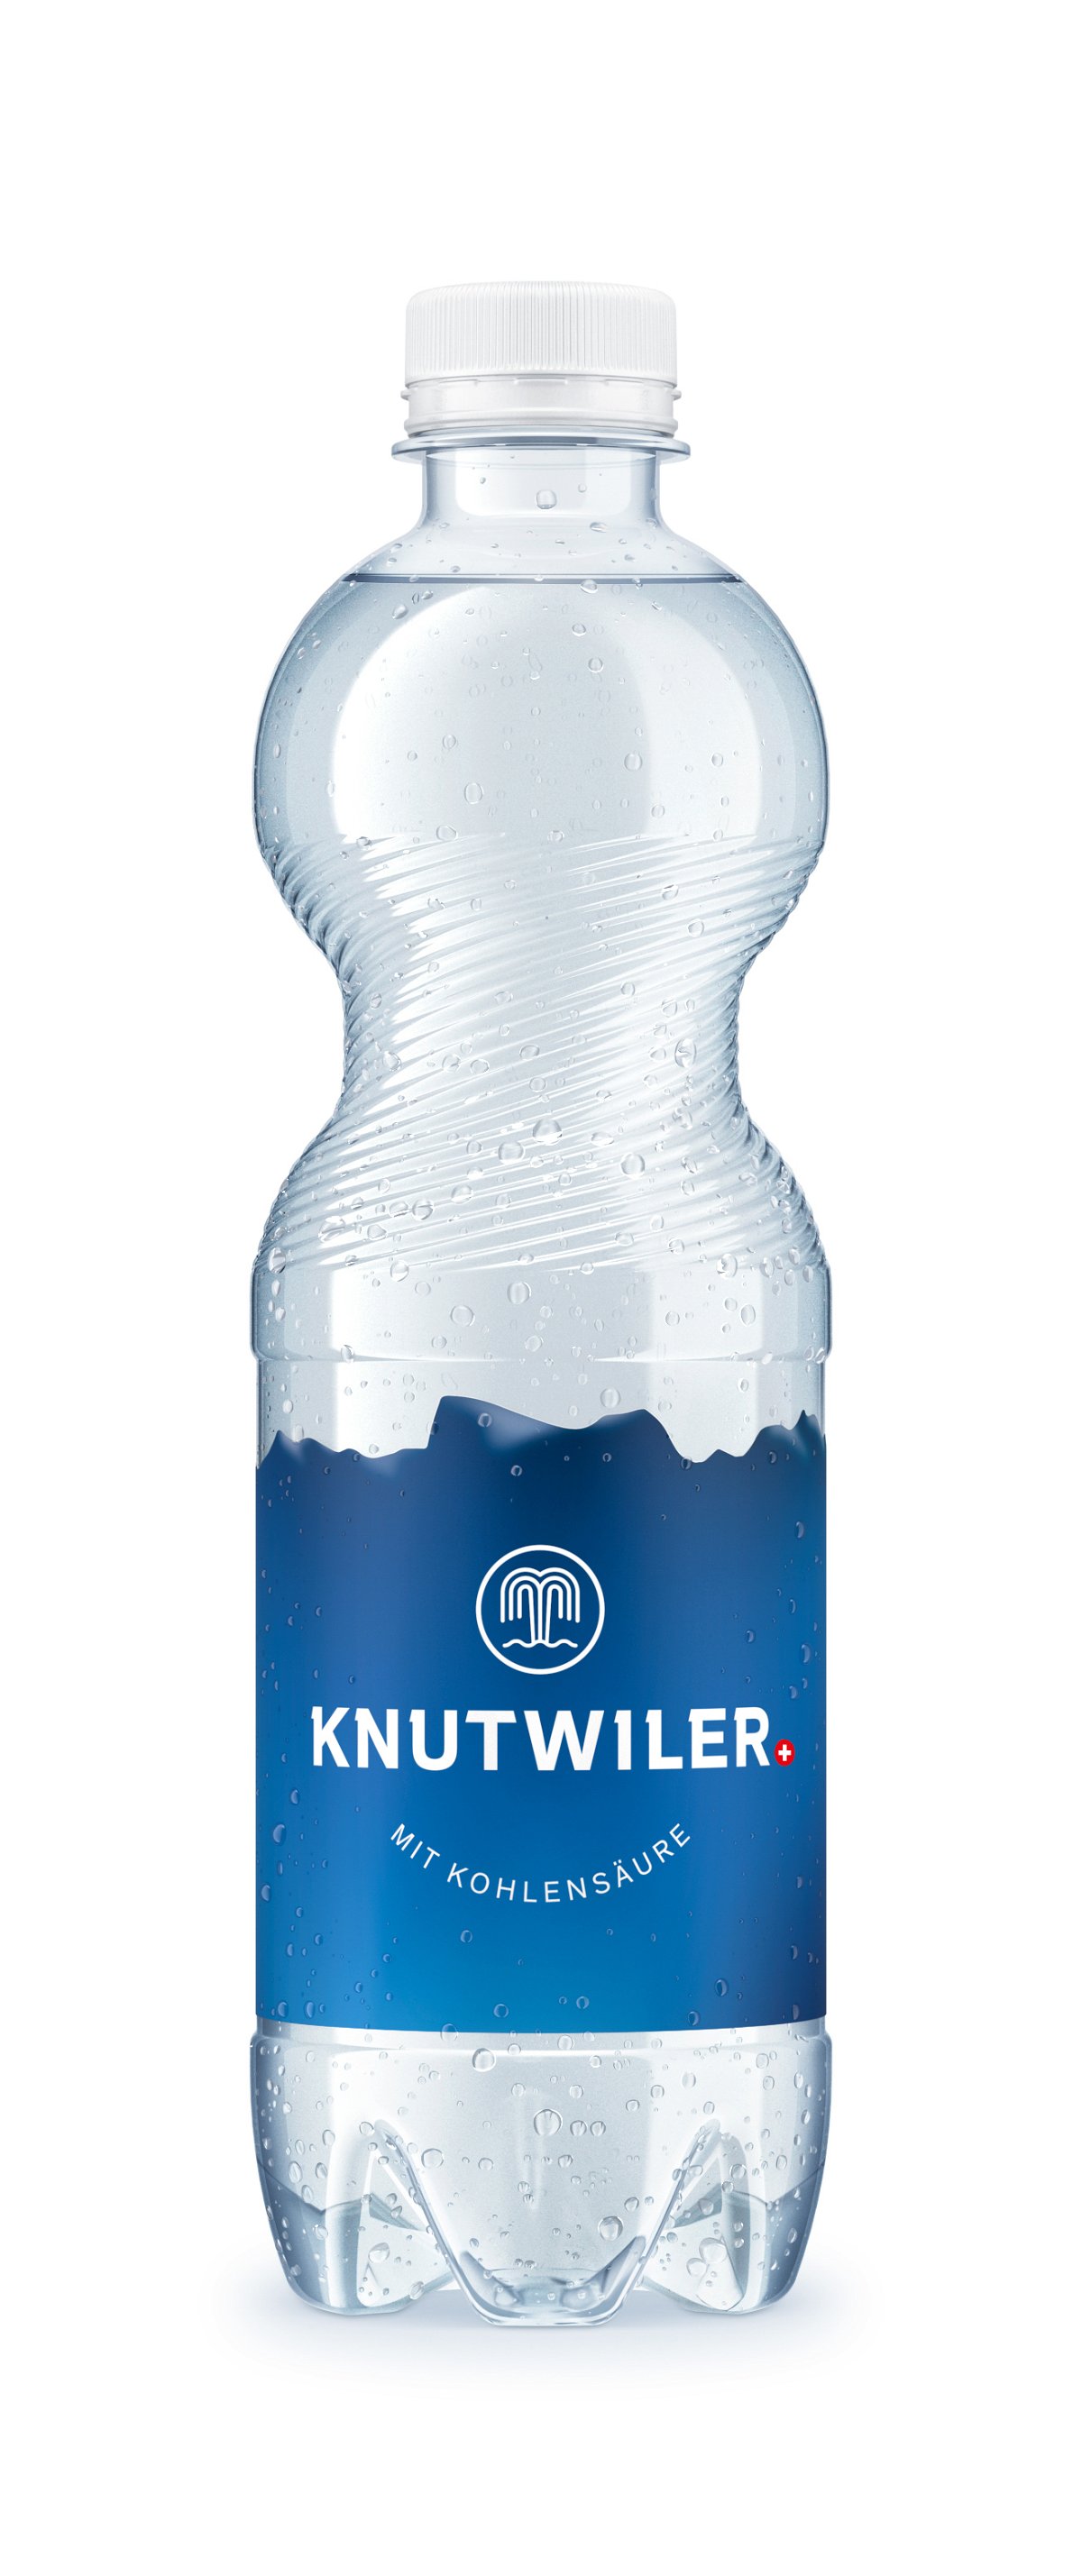 Knutwiler Mineralwasser mit Kohlensäure